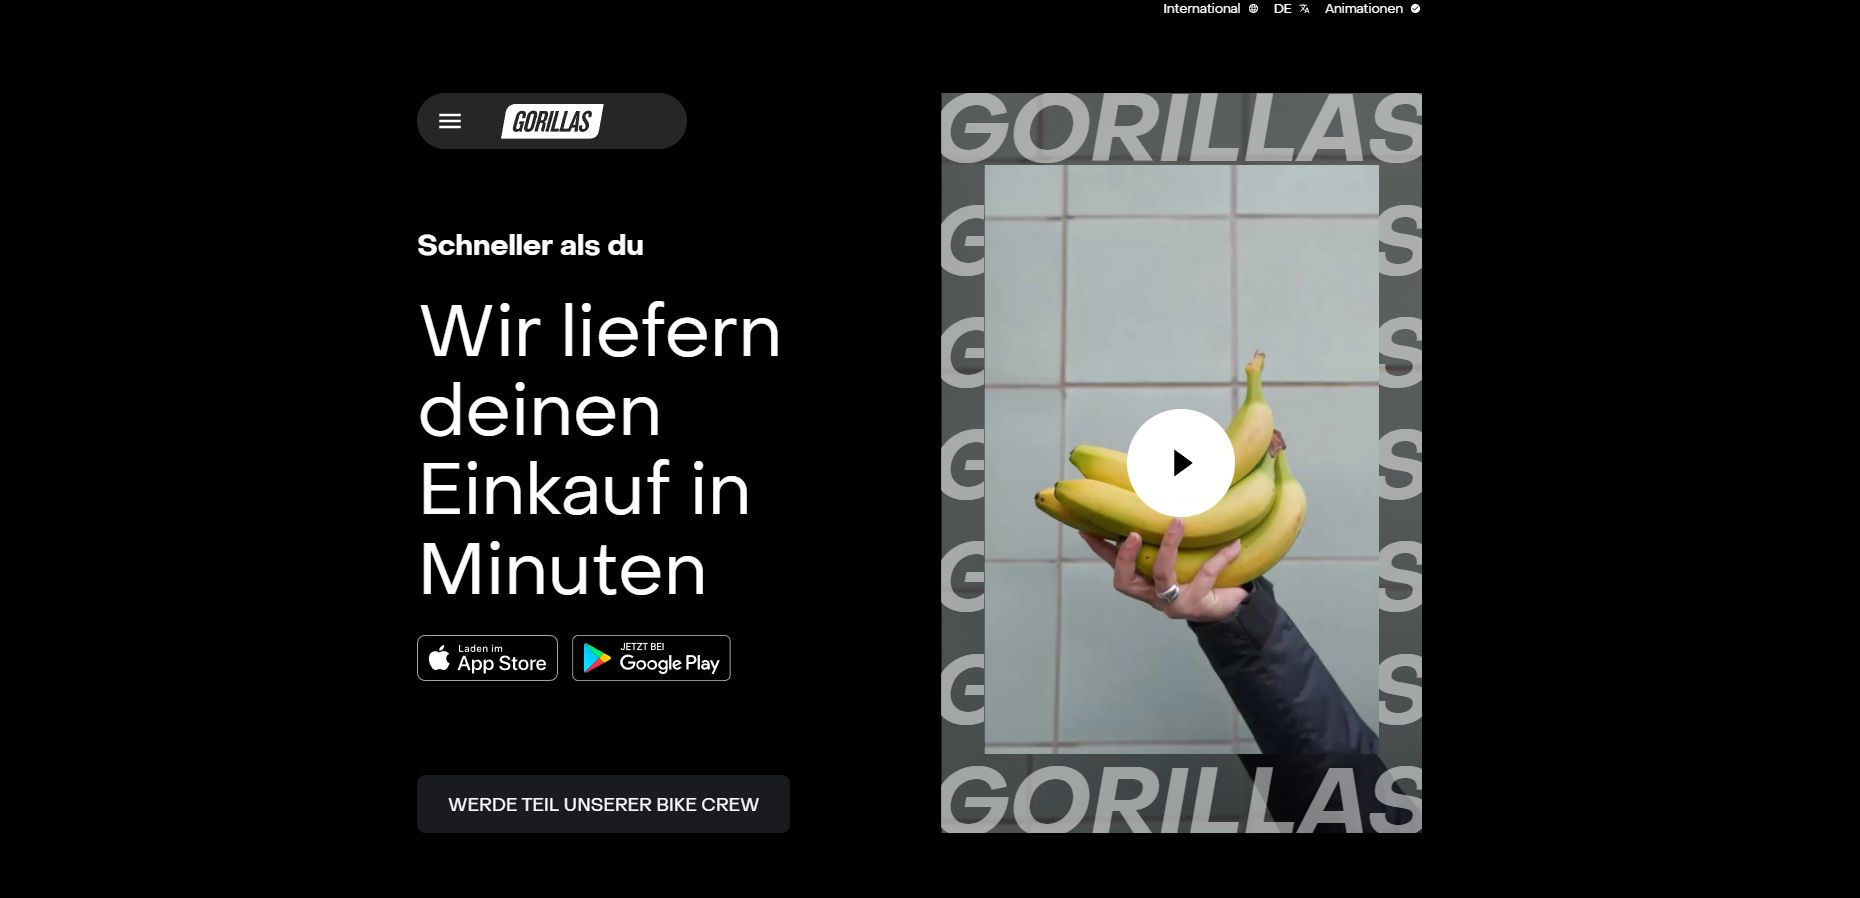 Gorillas Frühstück Lieferservice